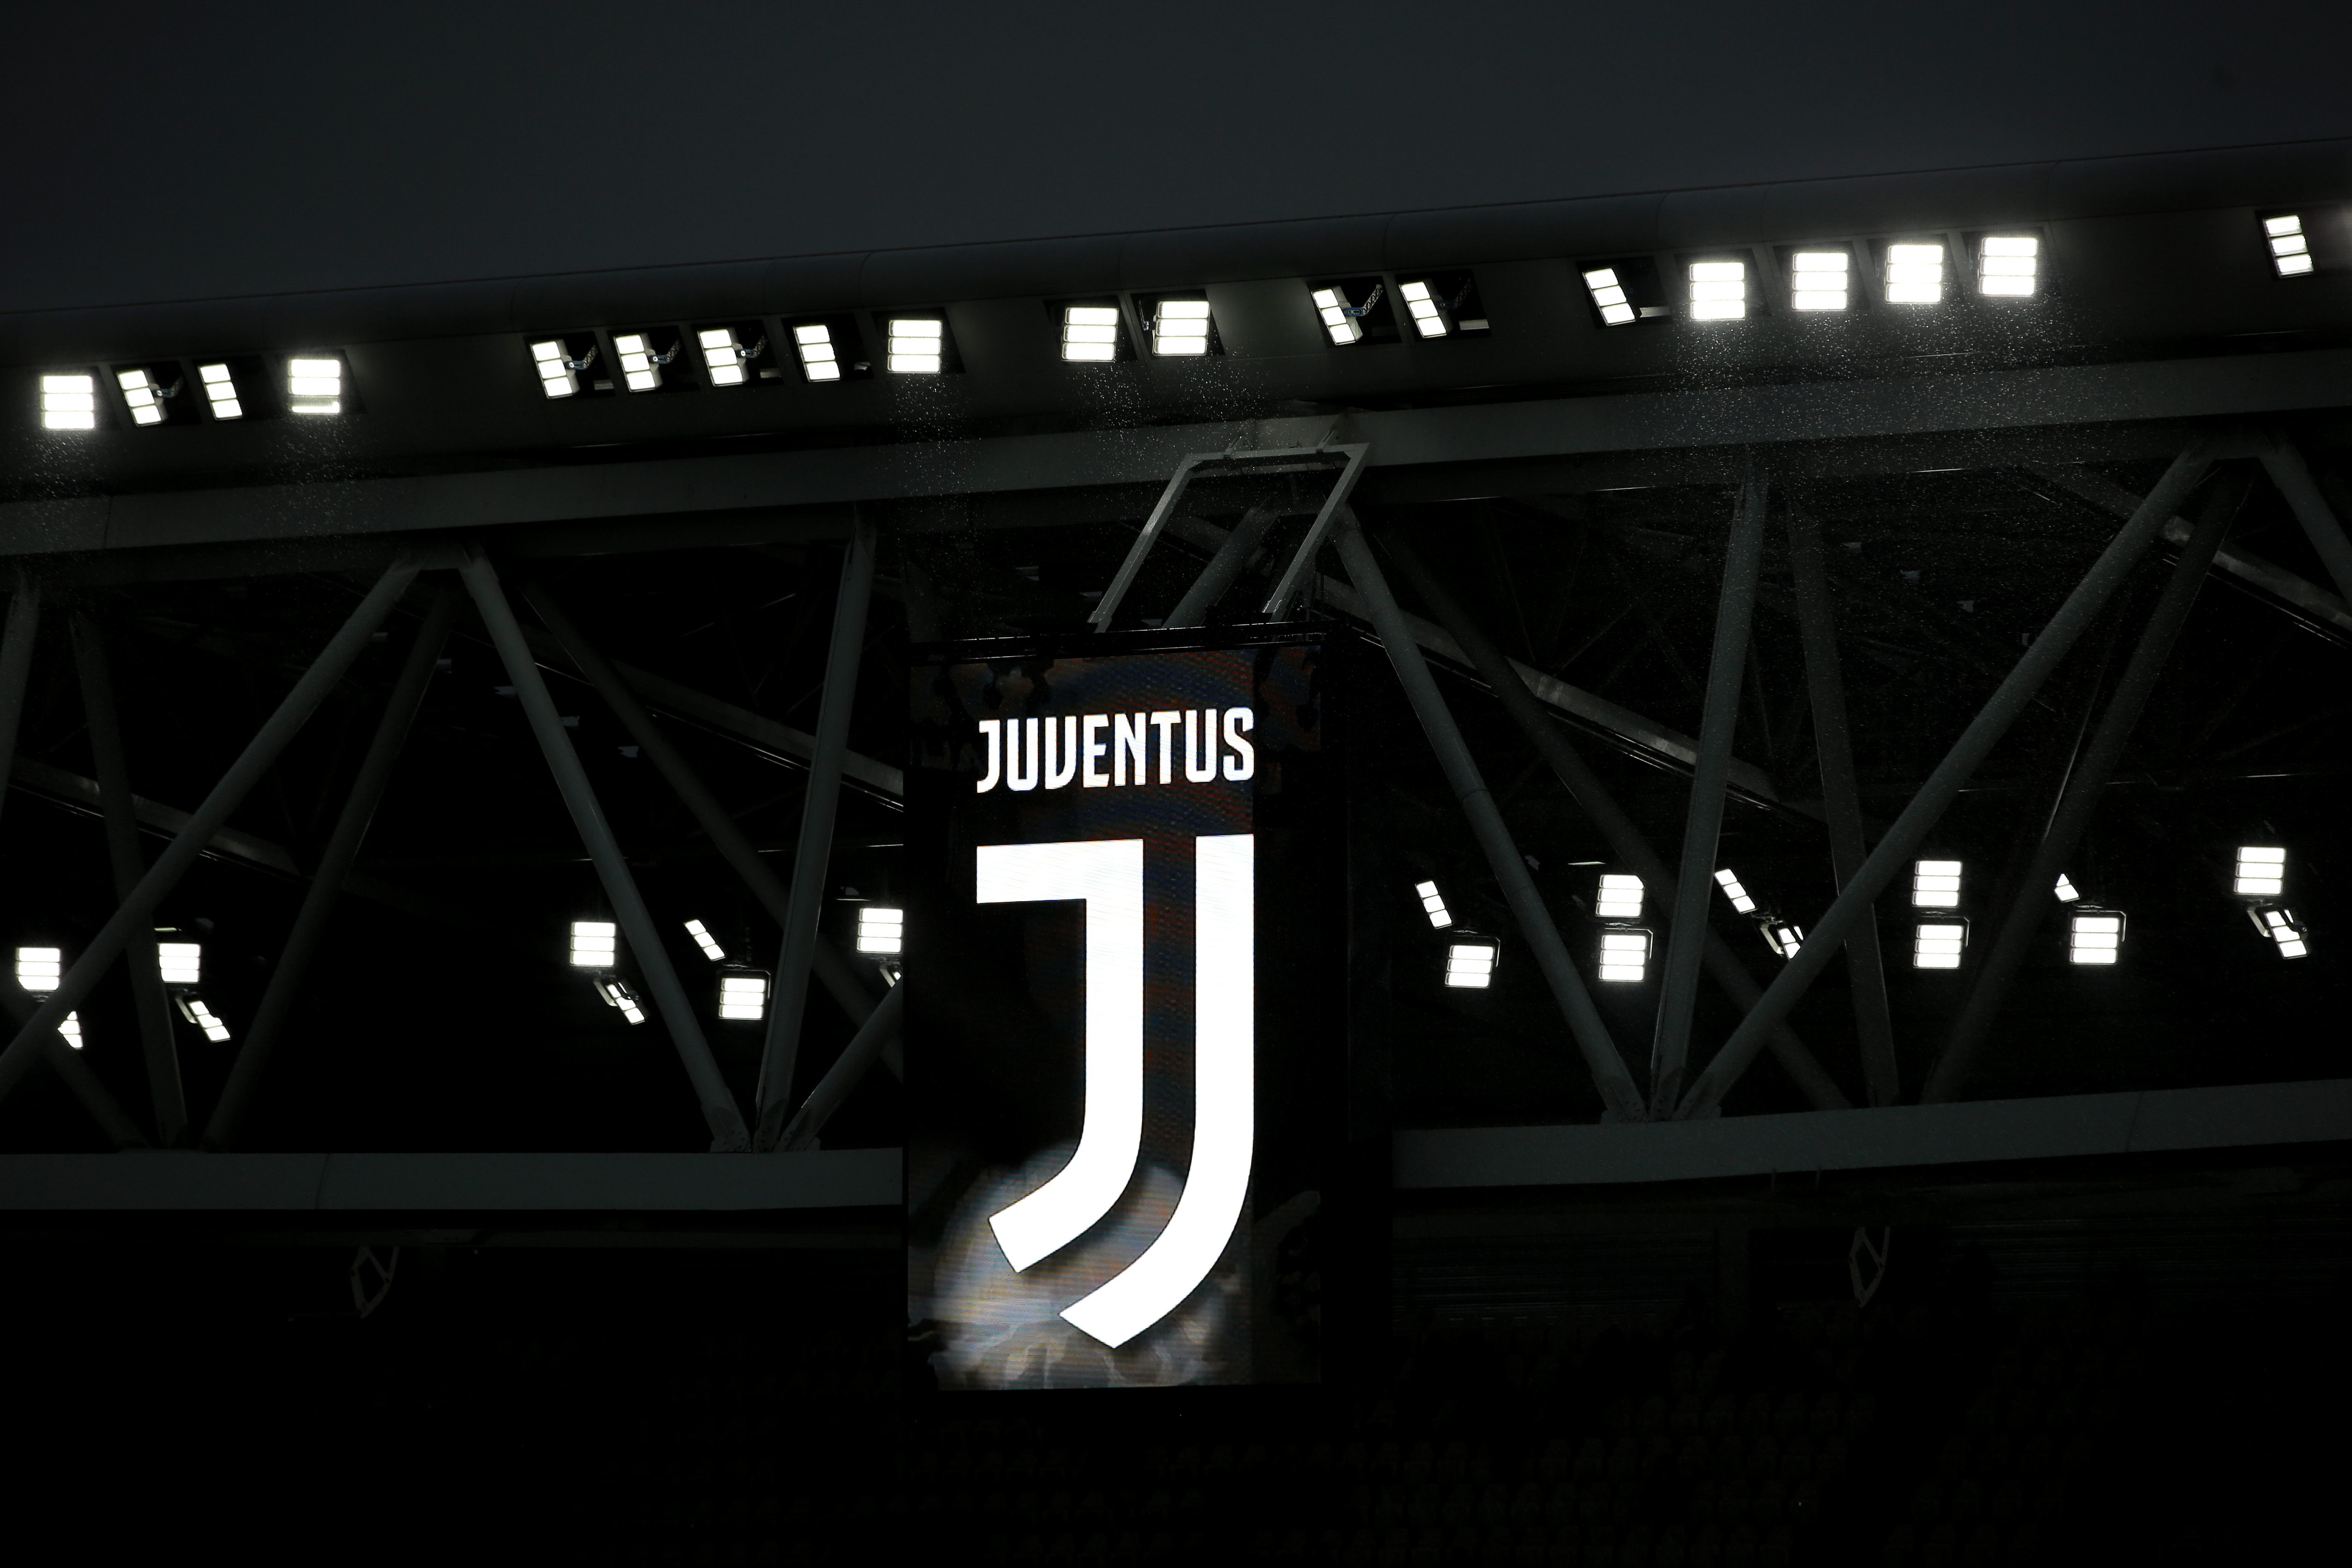 Juventus, pe marginea prăpastiei. Gaura uriașă anunțată de presa din Italia, după demisia conducerii